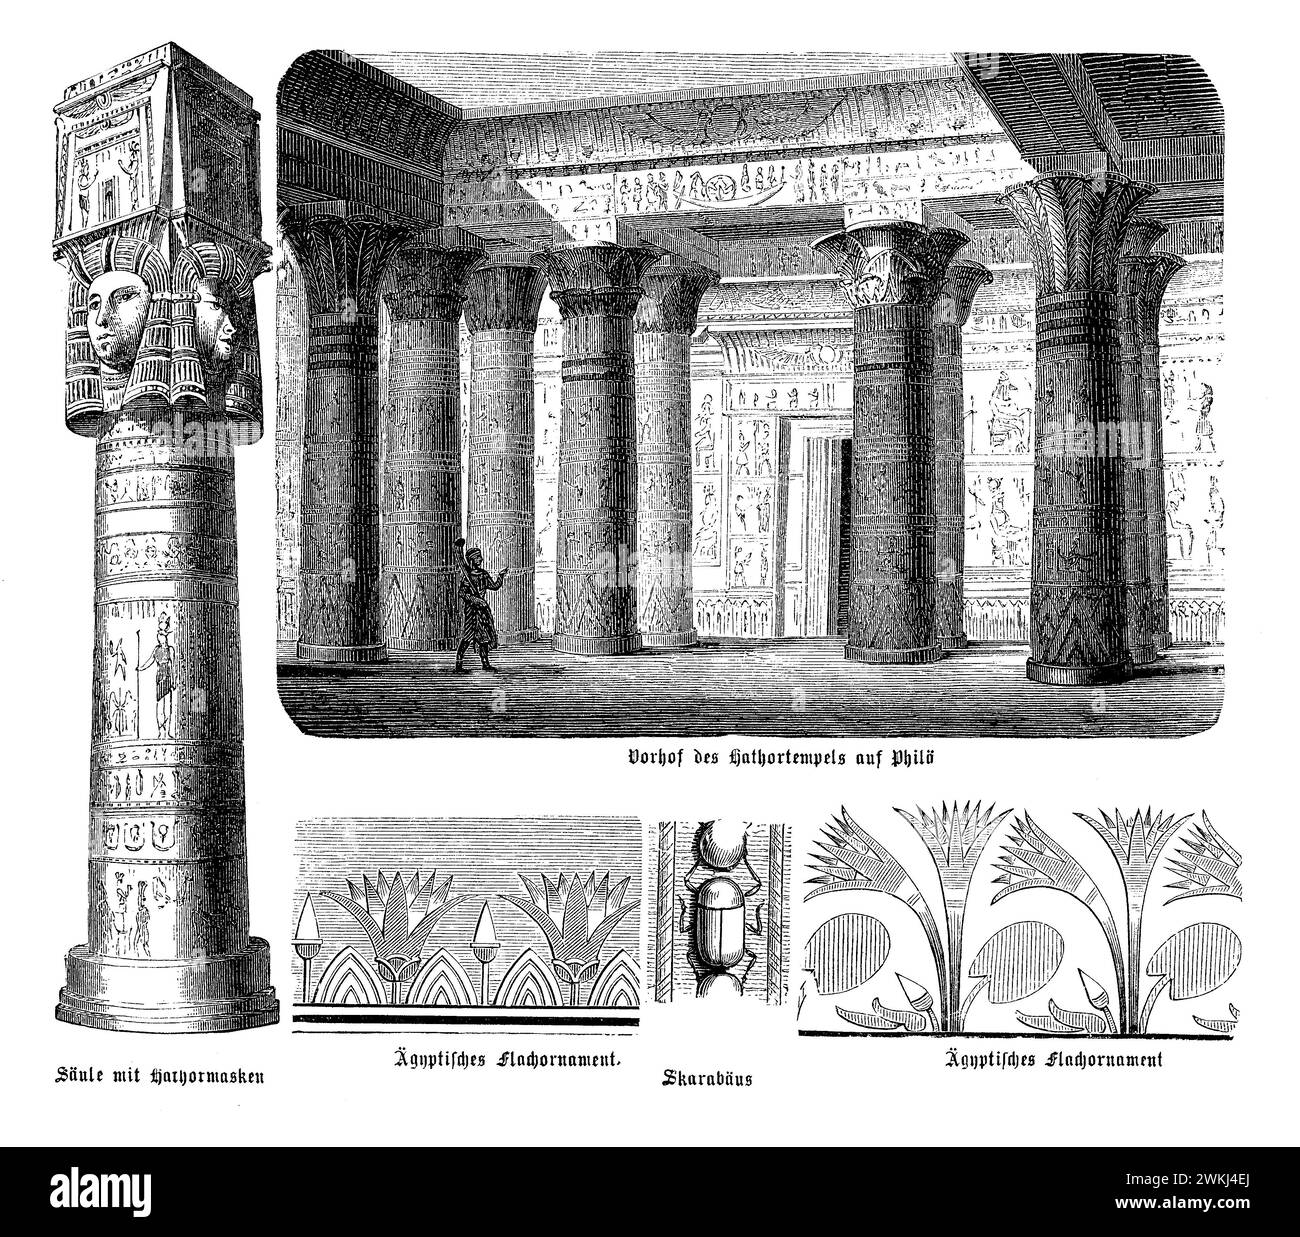 Il Tempio di Hathor a Dendera, uno splendido esempio di architettura tardo egiziana, presenta una struttura riccamente decorata con un'enfasi sul culto di Hathor. Il tempio presenta un ampio cortile, circondato da colonne adornate con le complesse immagini di Hathor e di altre divinità. Intricati ornamenti piatti coprono le pareti del tempio, raffigurando rituali religiosi, scene mitologiche ed elementi simbolici come lo scarabeo, simbolo di rinascita e del sole. Questo tempio, con le sue dettagliate incisioni e il suo significato storico, rimane una testimonianza delle conquiste religiose e artistiche di un Foto Stock